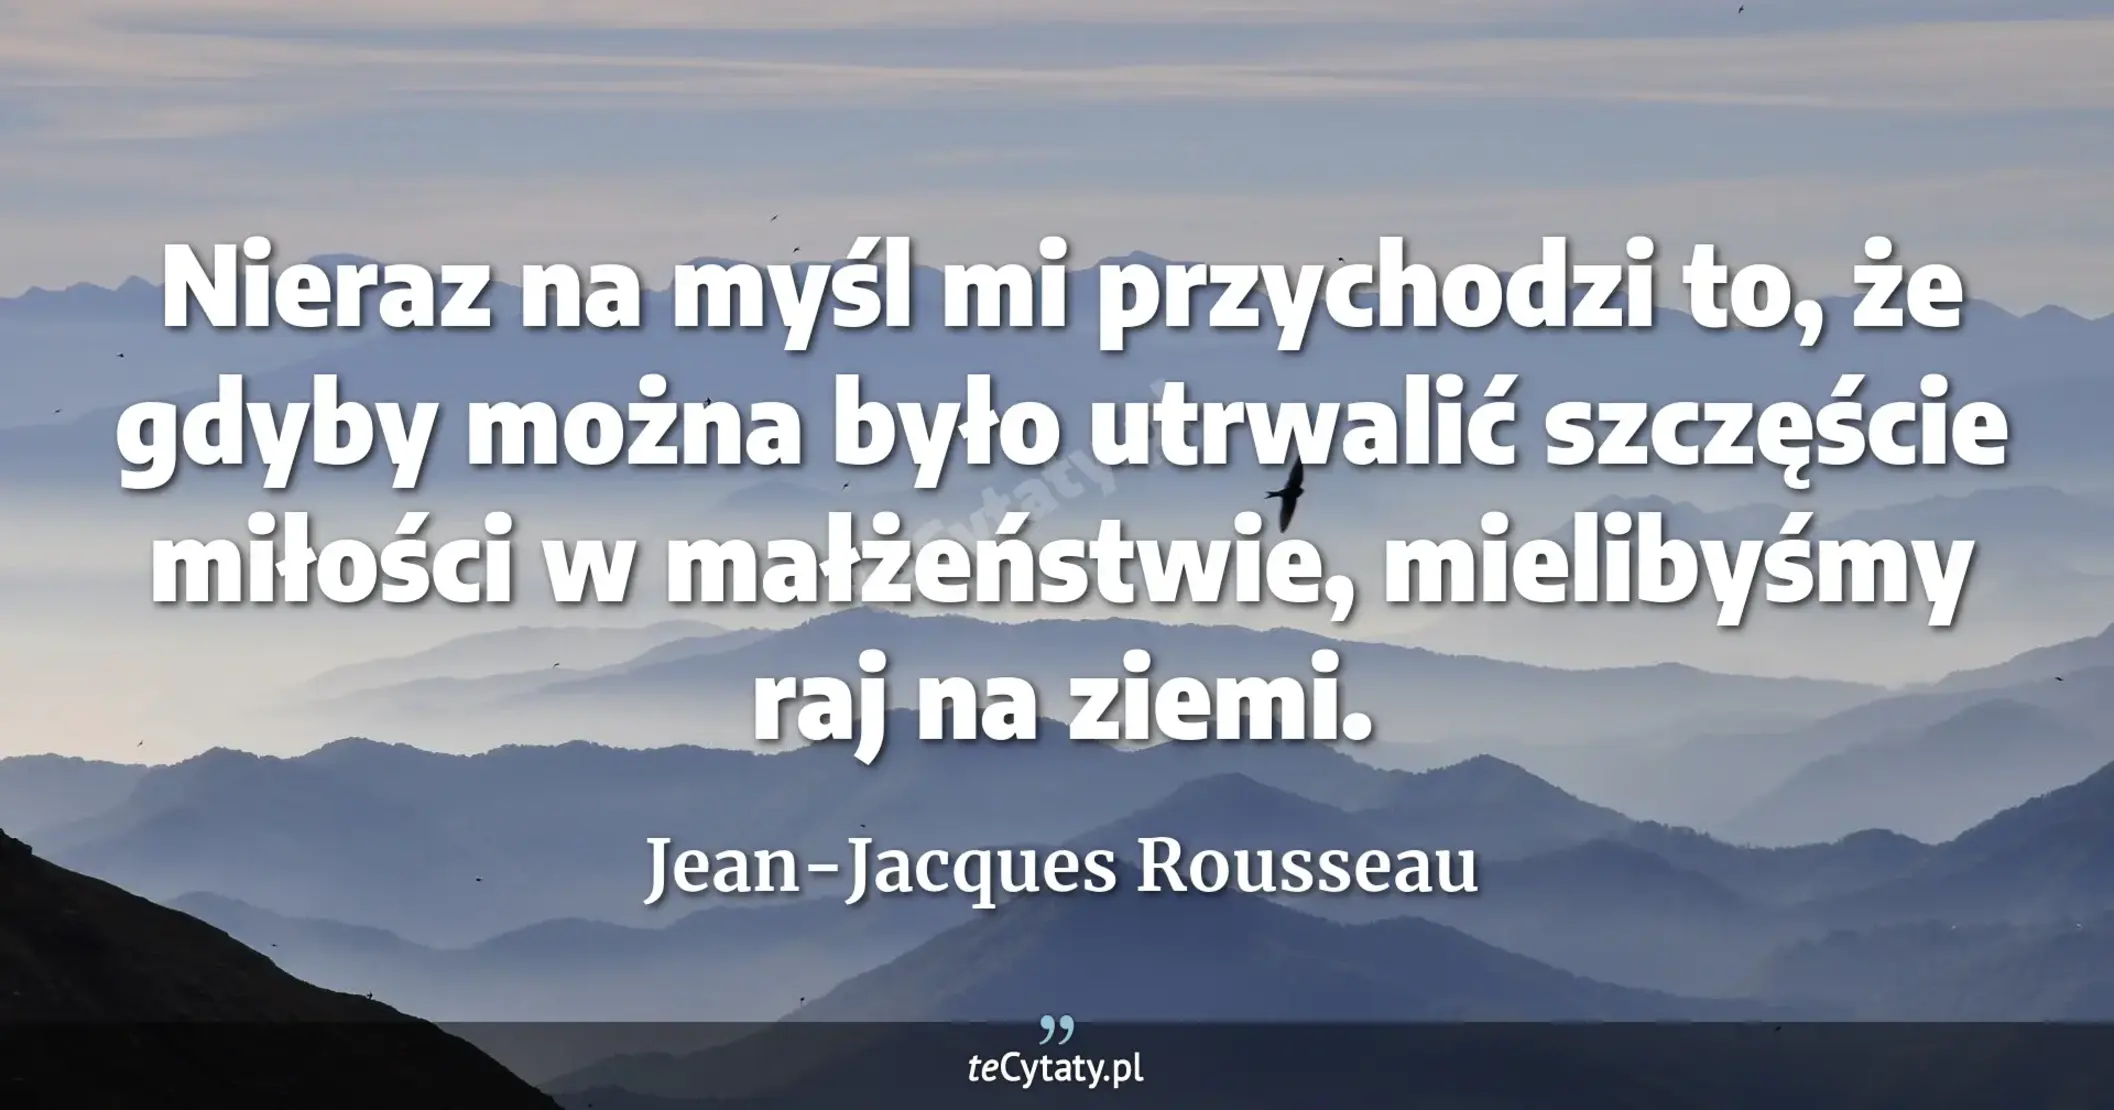 Nieraz na myśl mi przychodzi to, że gdyby można było utrwalić szczęście miłości w małżeństwie, mielibyśmy raj na ziemi. - Jean-Jacques Rousseau